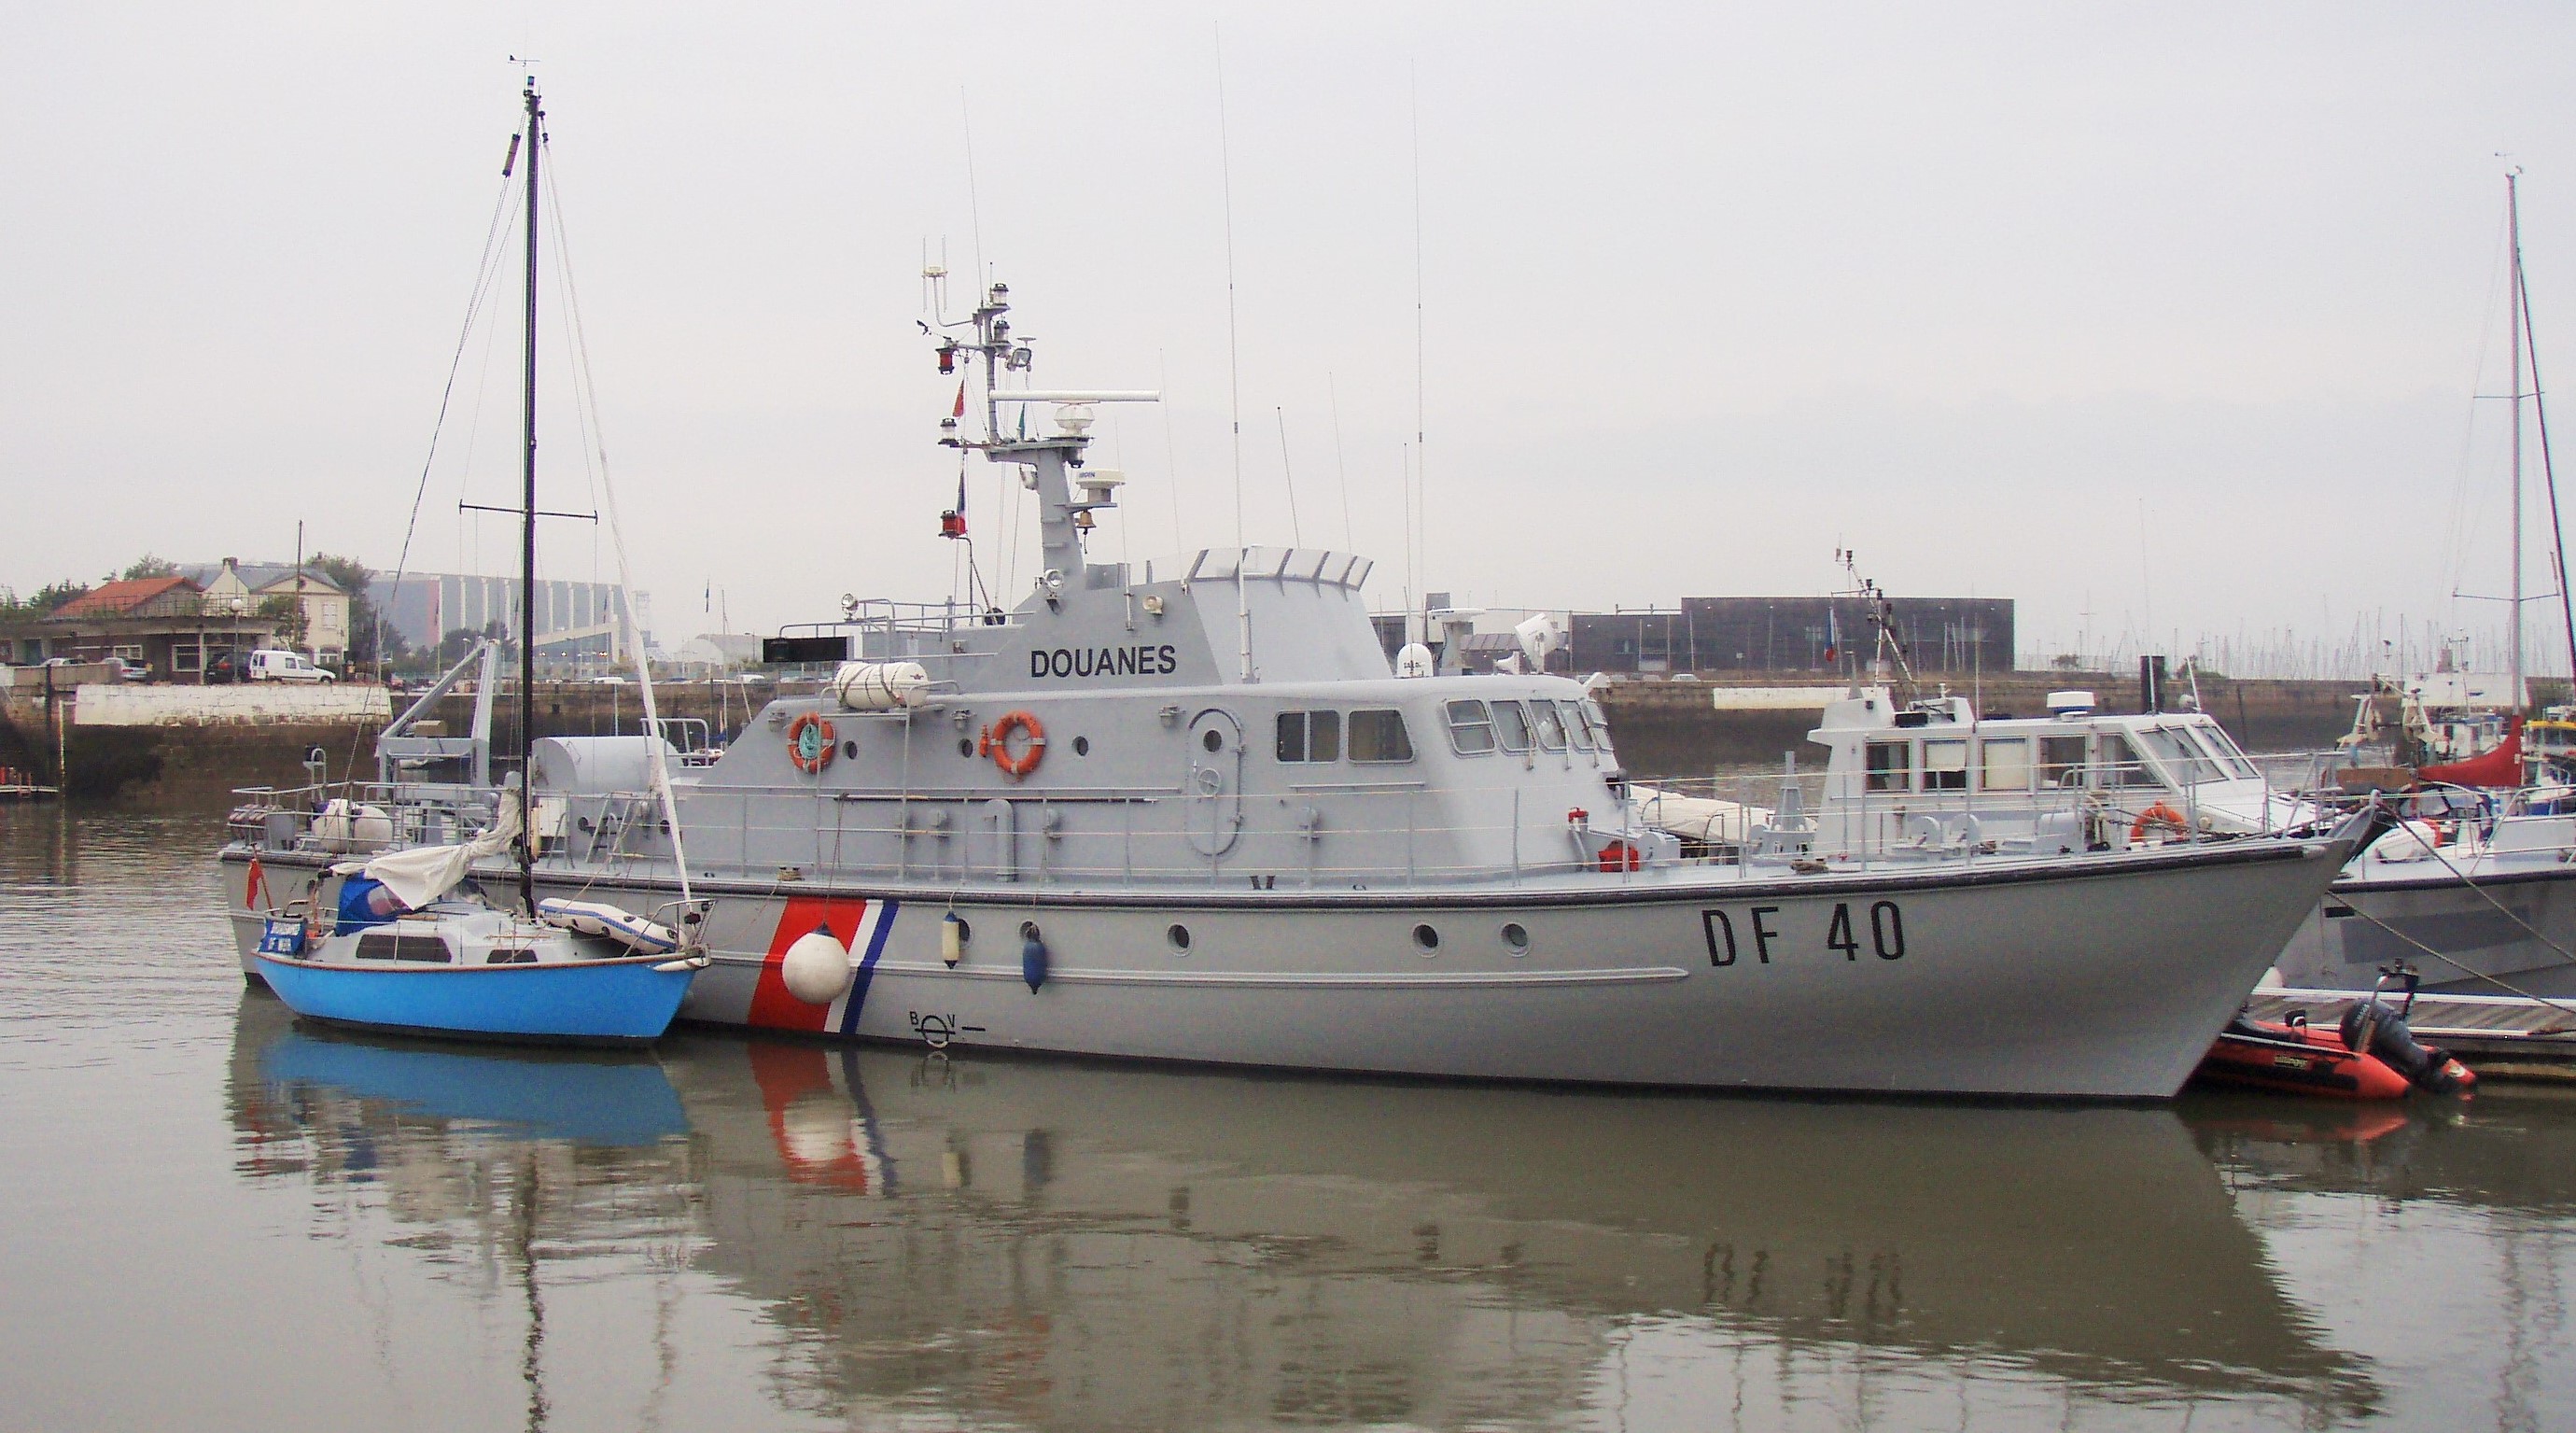 La vedette des garde-côtes de la direction régionale de Rouen était en mission de surveillance lorsque le sloop a été repéré par les douaniers (Photo@Douane)